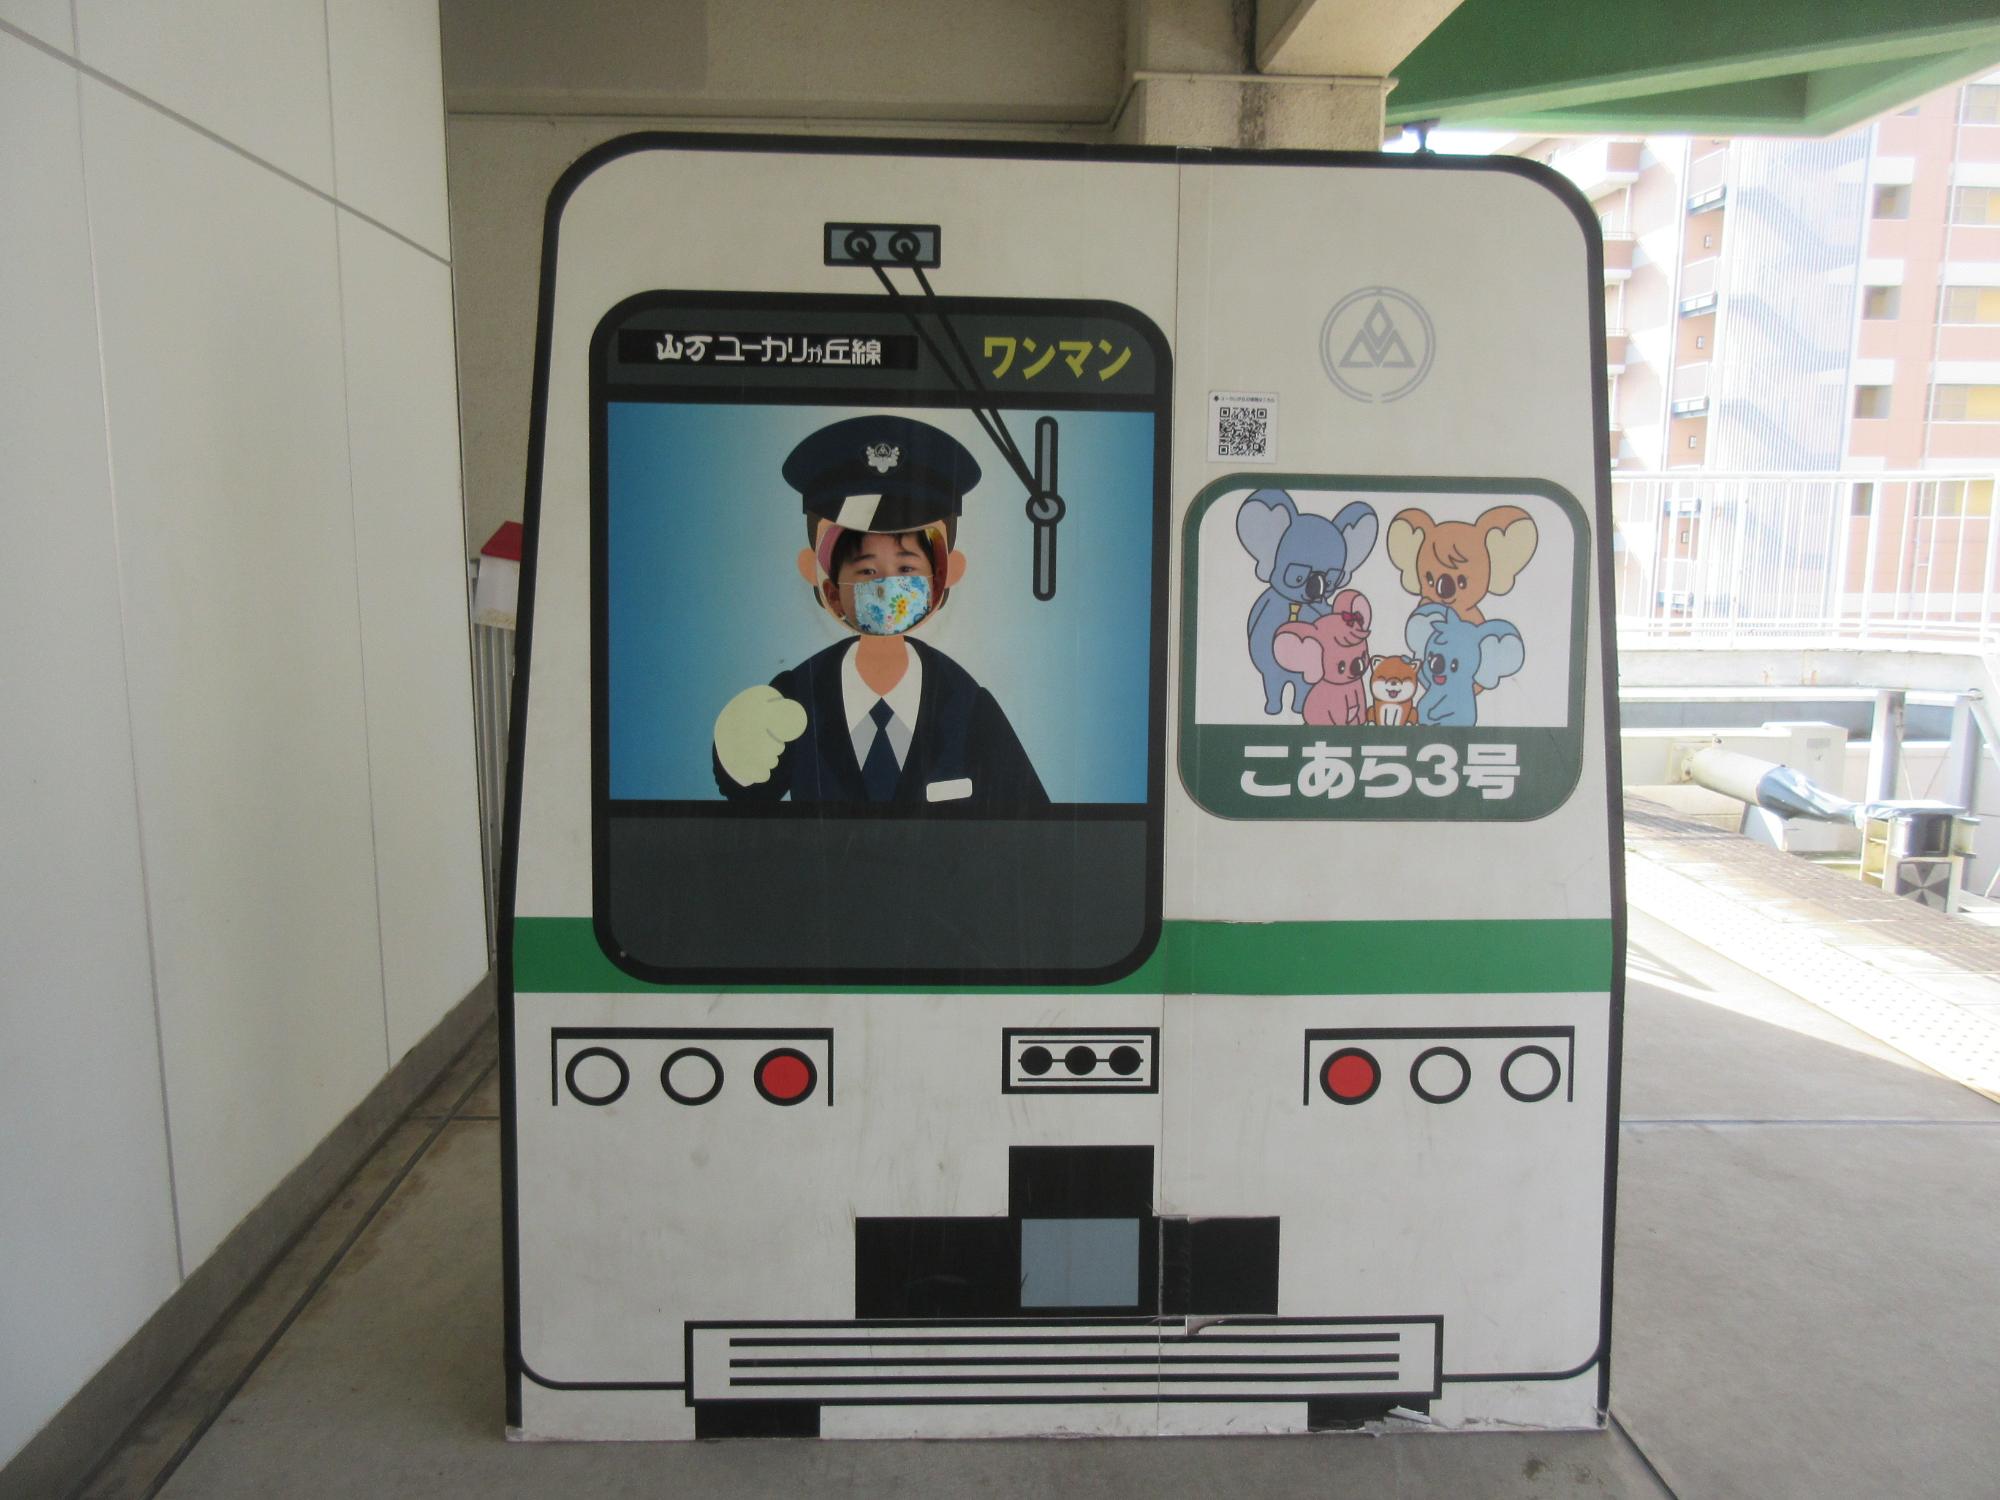 電車の運転席が描かれている顔部分がくり抜かれている顔出しパネルに園児が顔を出している写真